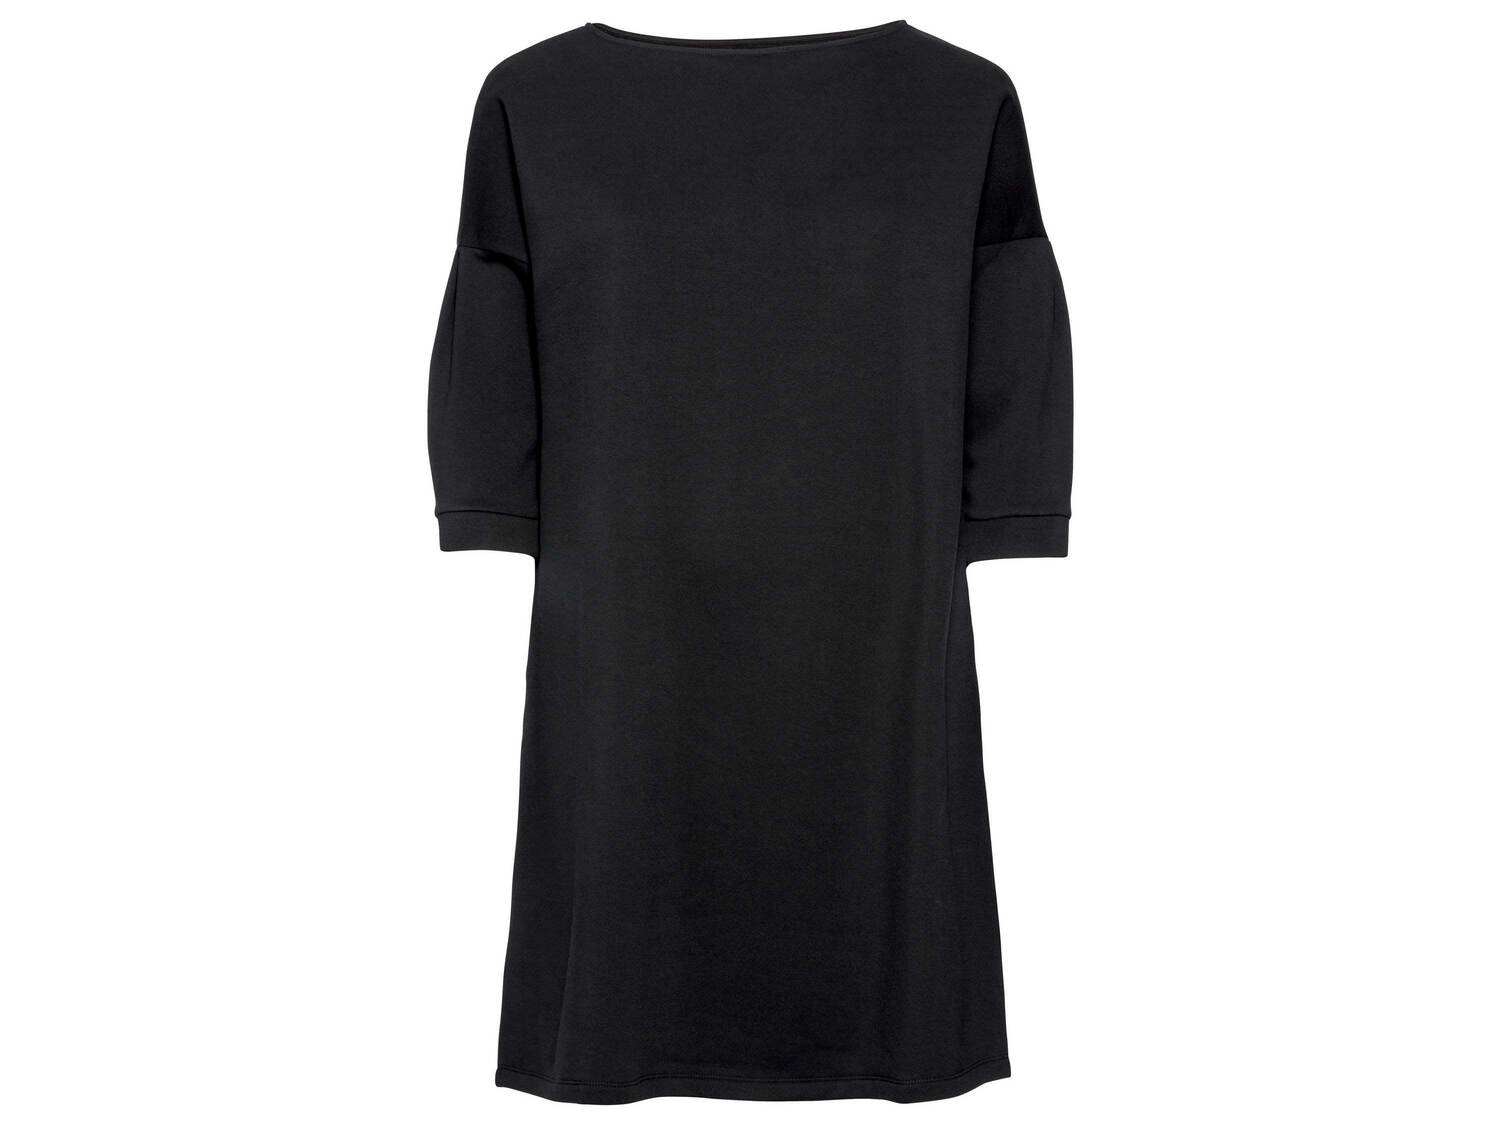 Sukienka z tkaniny dresowej Esmara, cena 19,00 PLN 
różne wzory i rozmiary
Dostępne ...